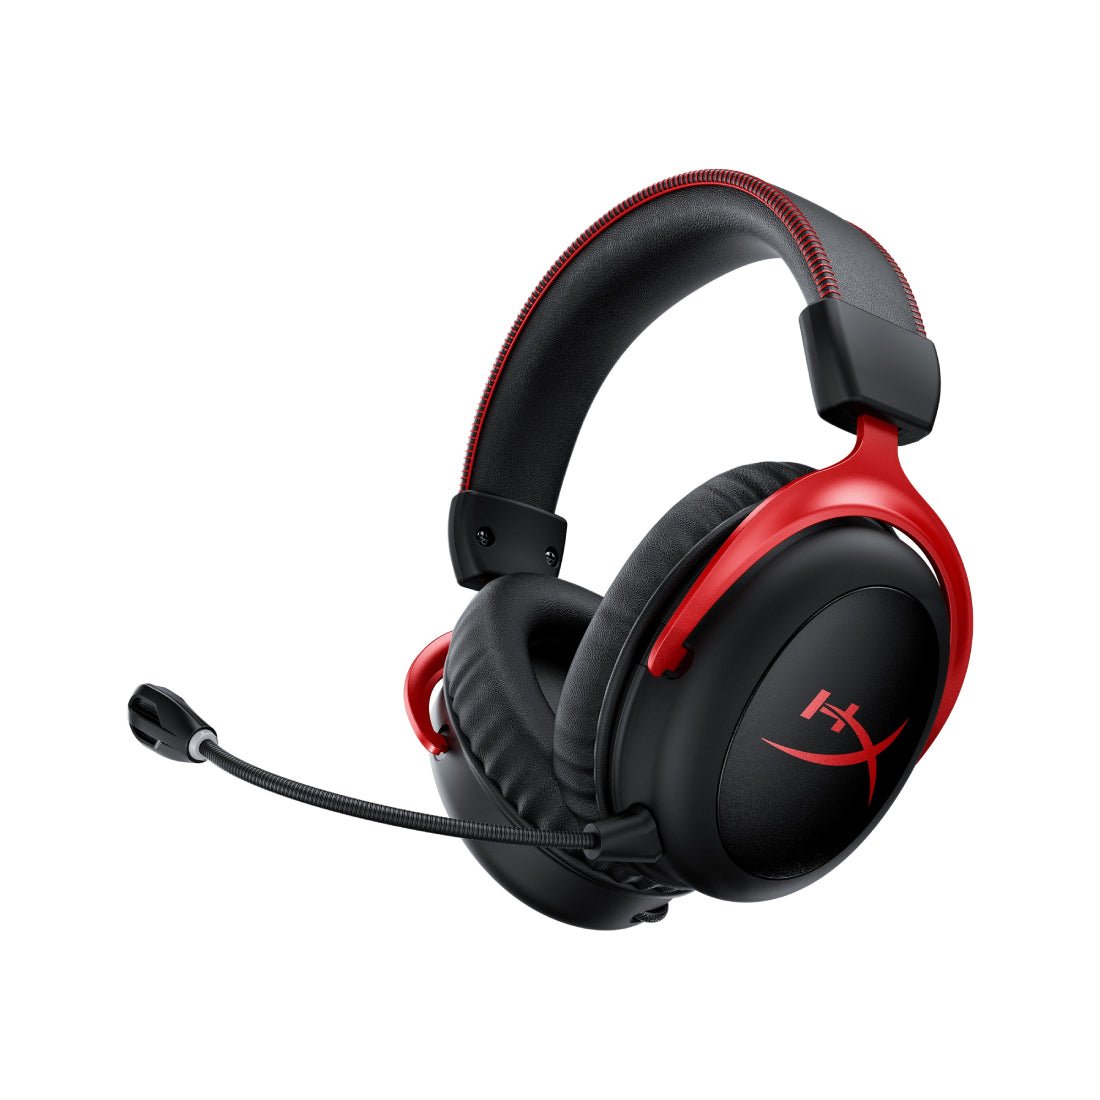 HyperX Cloud II Gaming Headset - Black & Red - Store 974 | ستور ٩٧٤